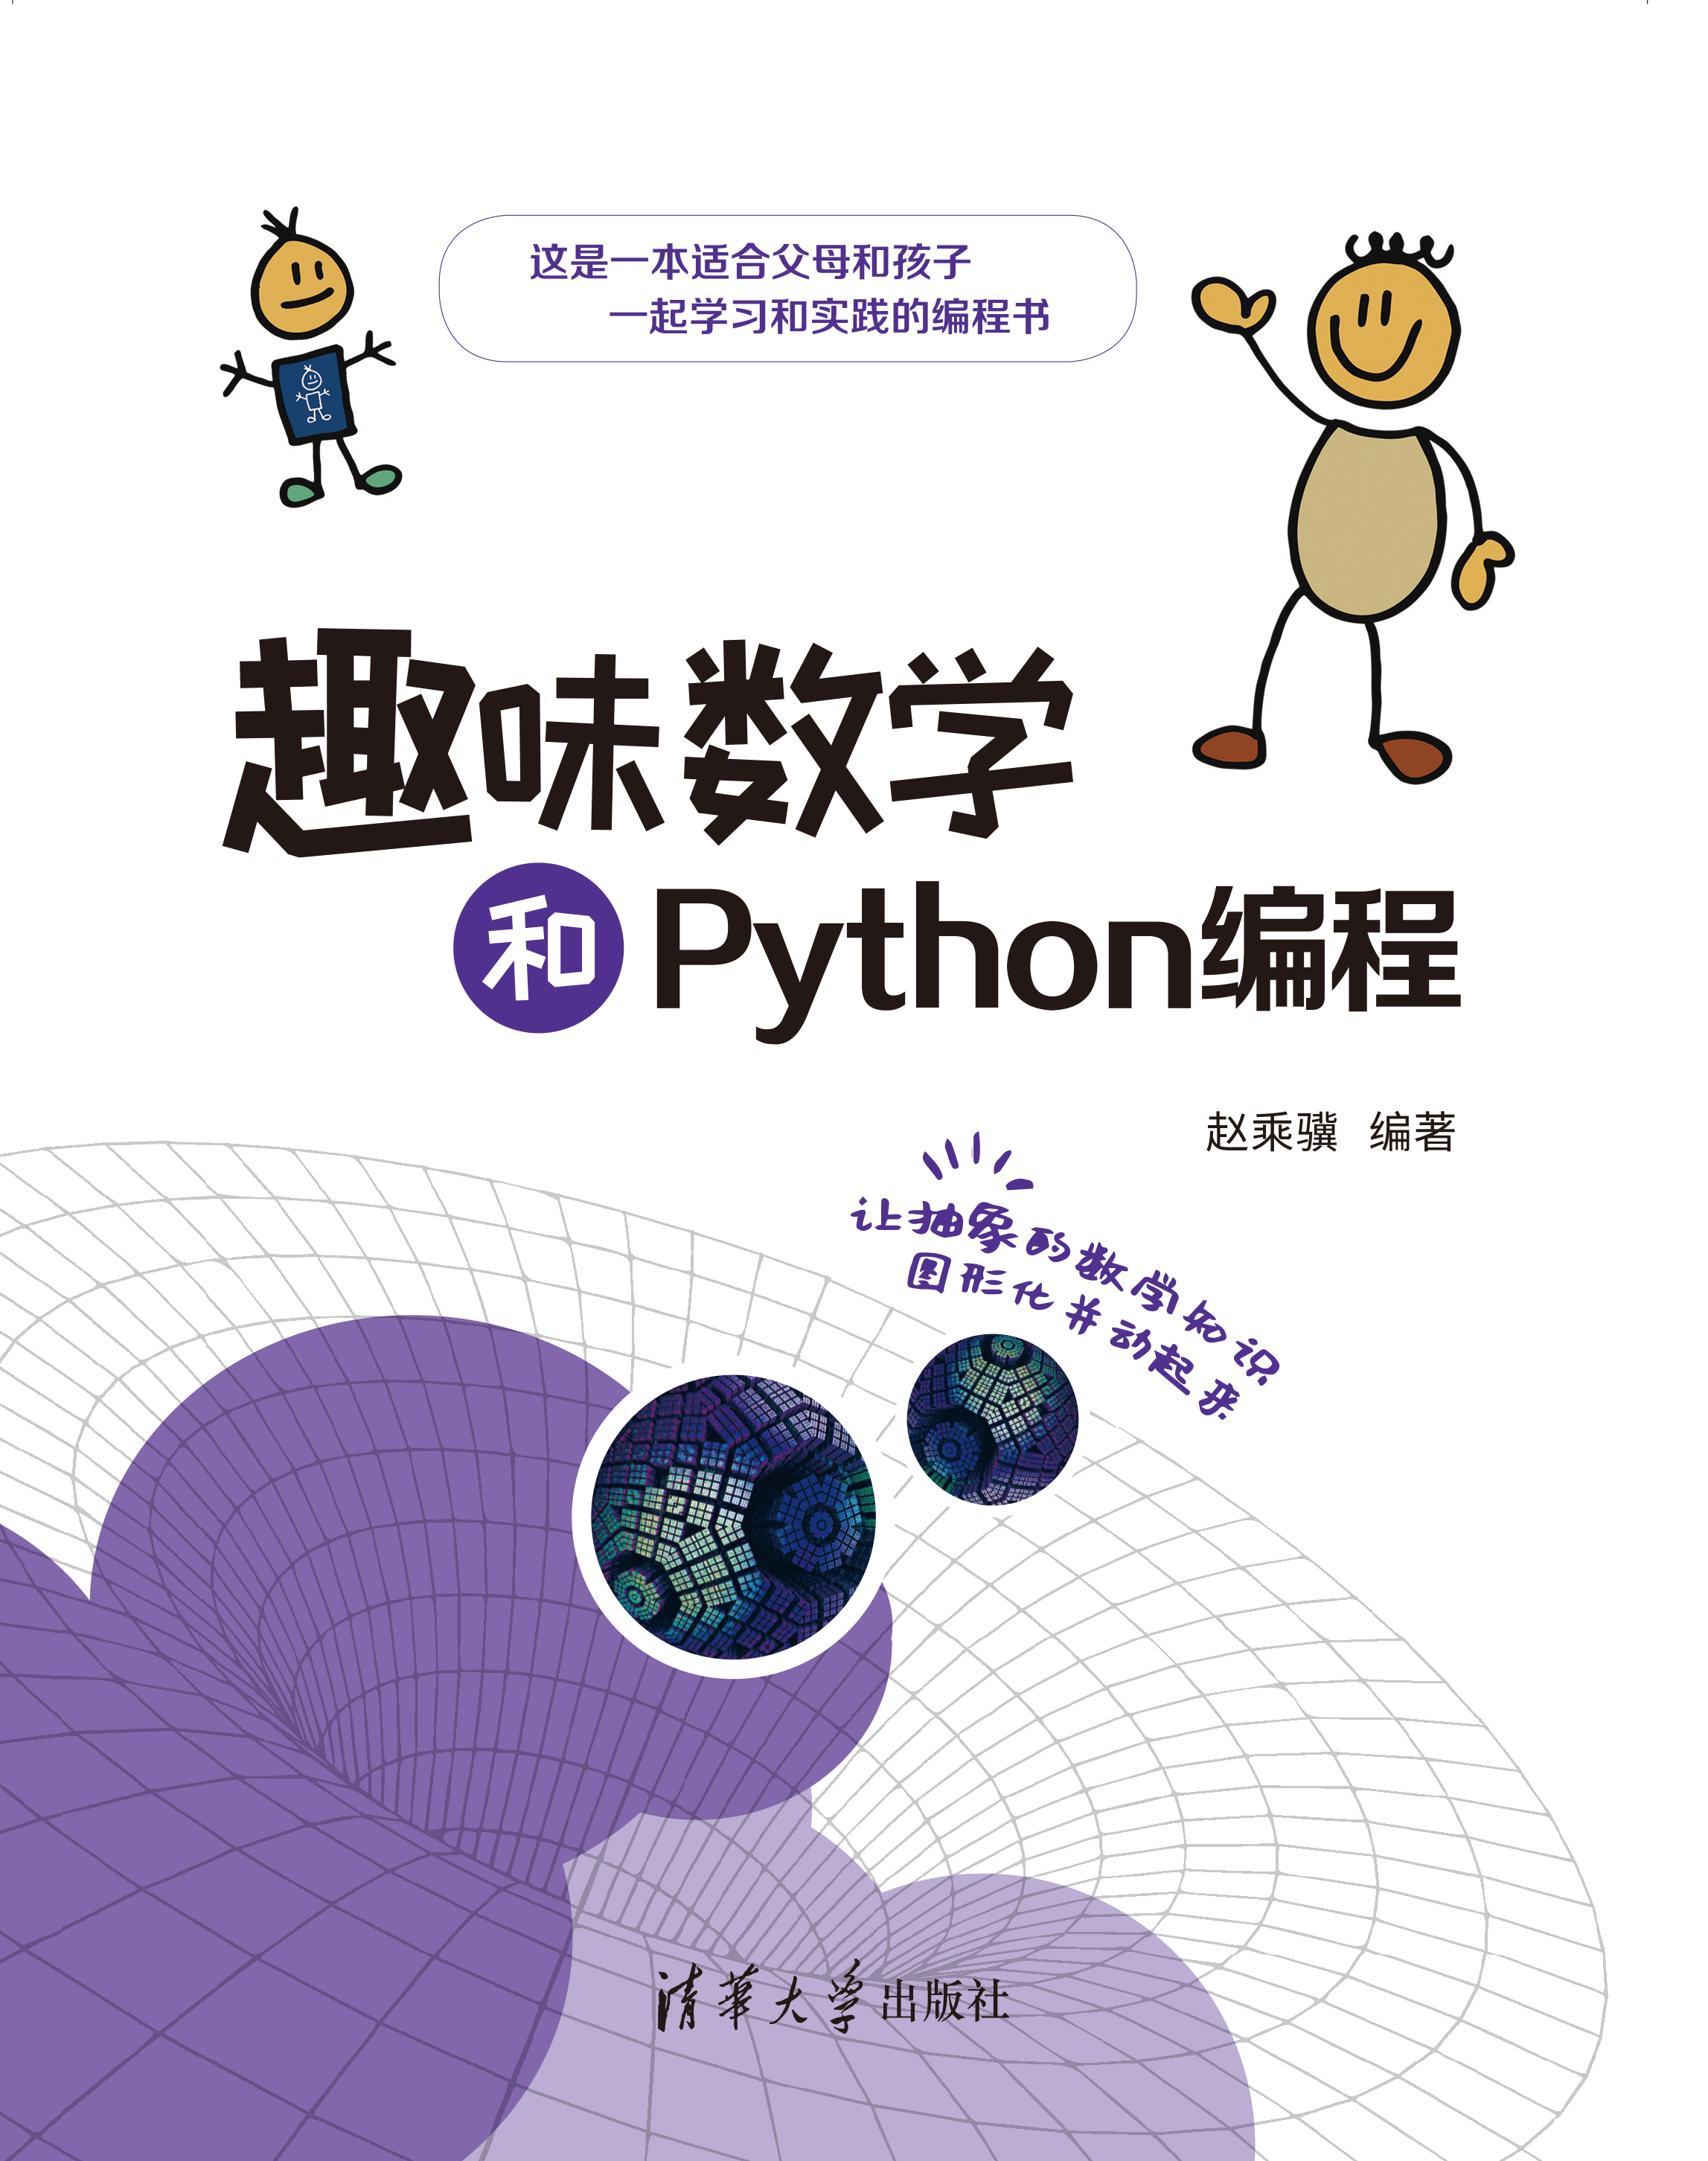 趣味数学和Python编程